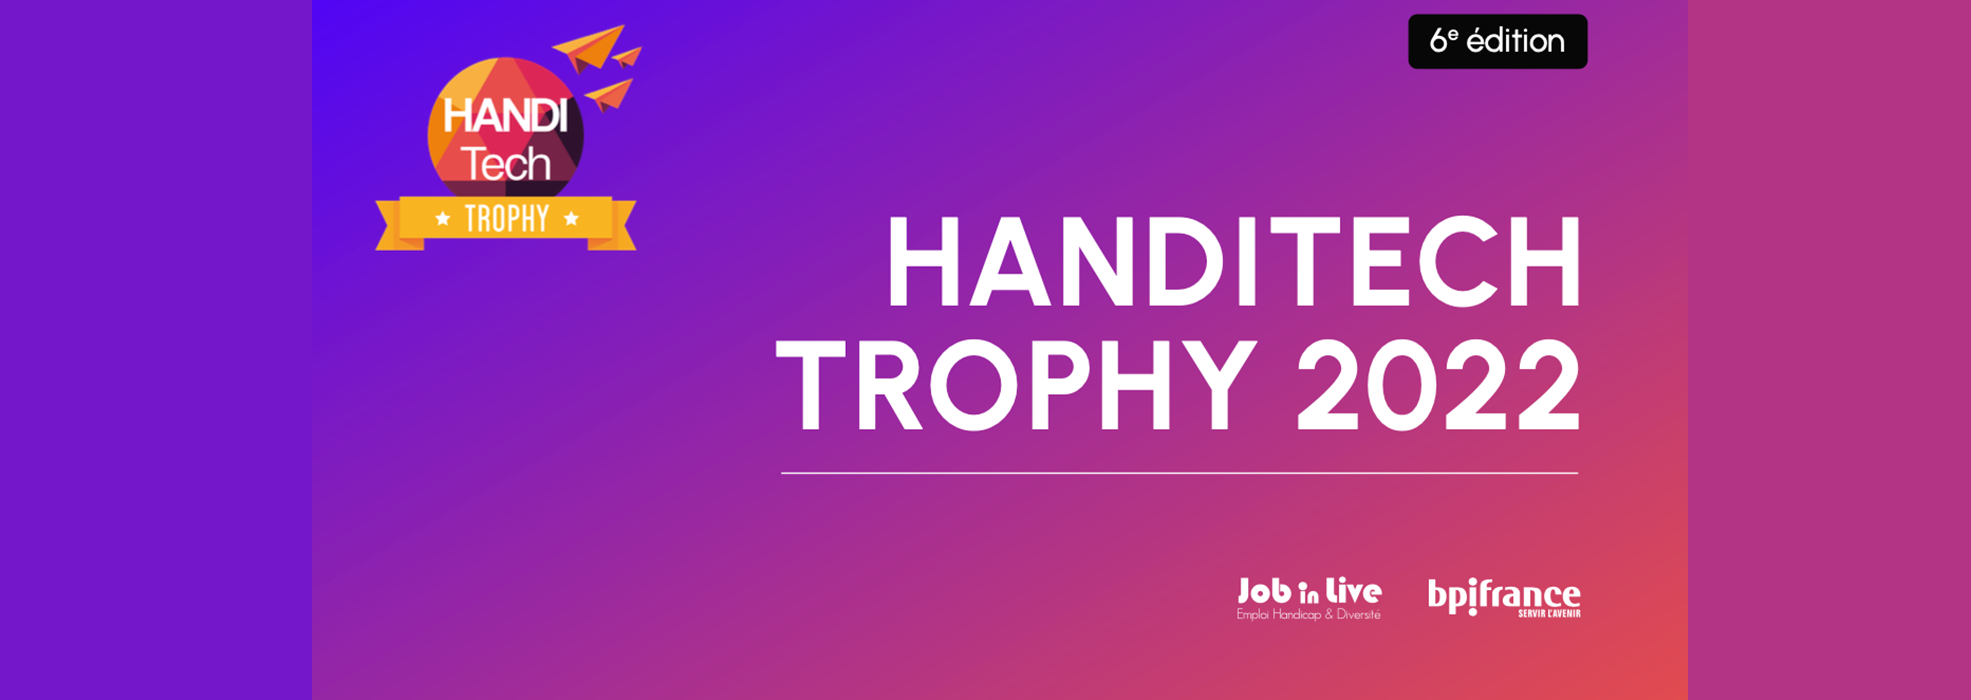 Bannière Handitech Trophy 2022